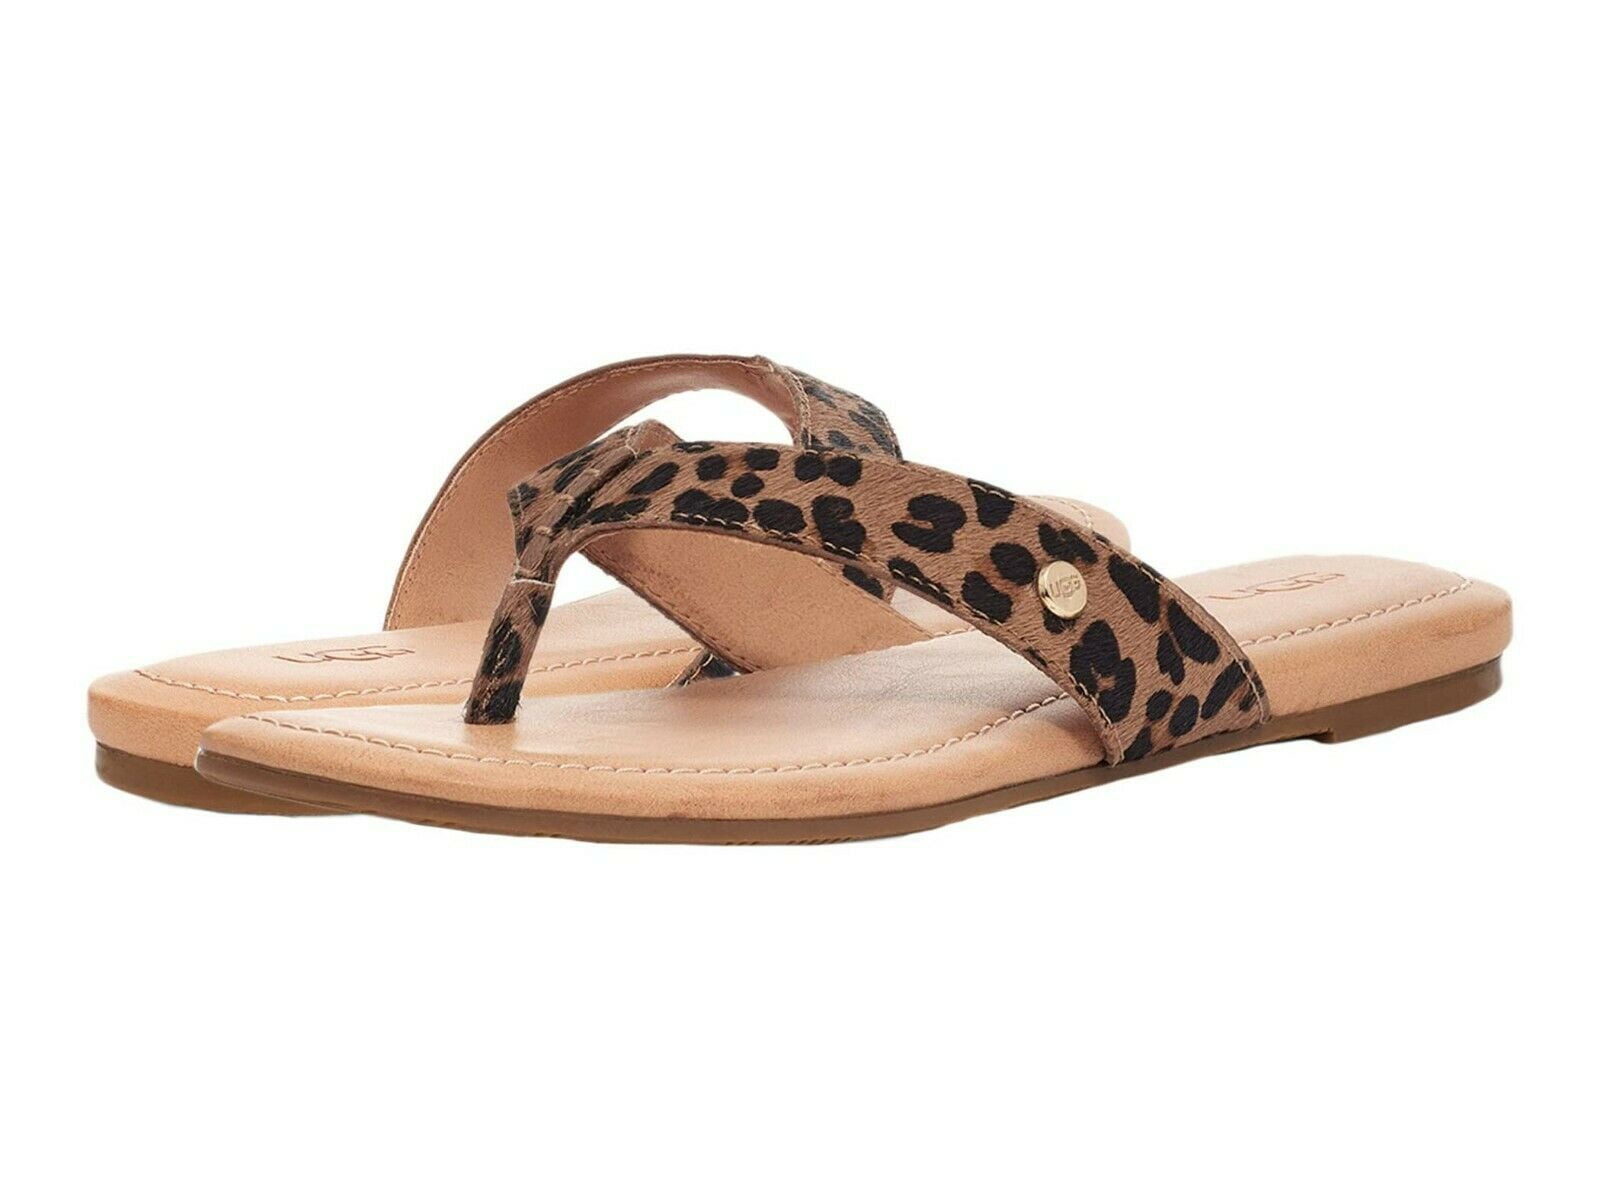 Shoes Sandals Flip-Flop Sandals Linea Scarpa Flip-Flop Sandals cream-black leopard pattern casual look 